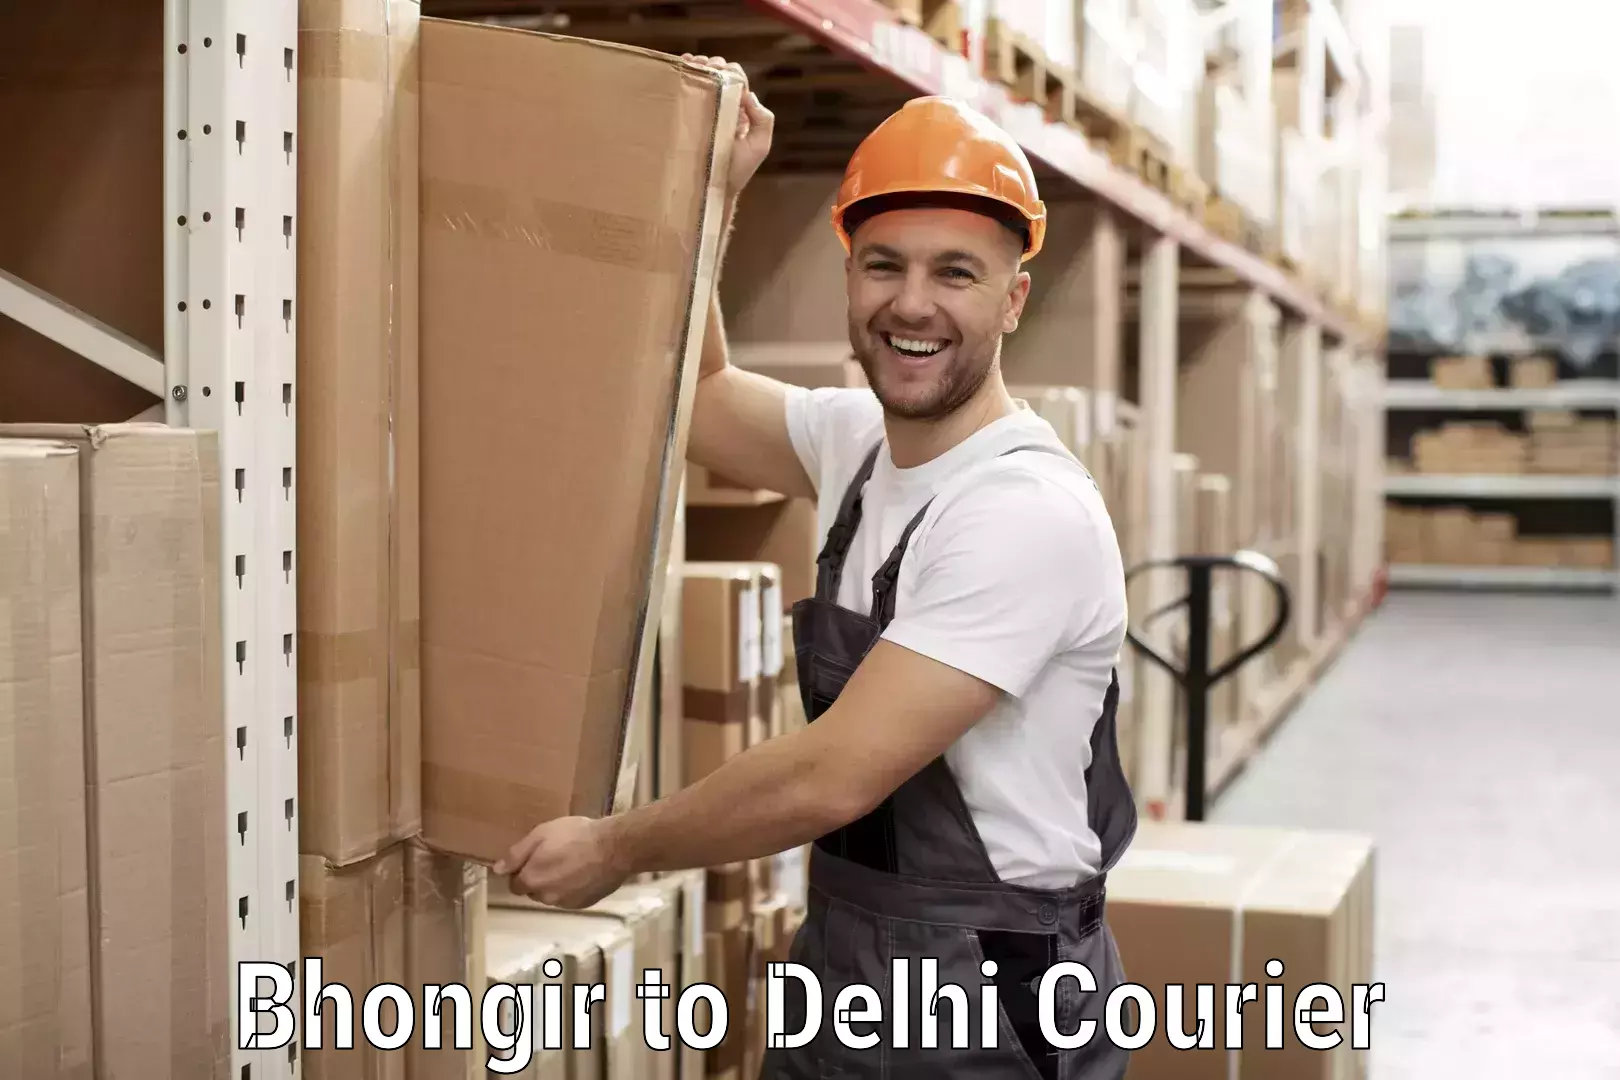 Next-day freight services Bhongir to Delhi